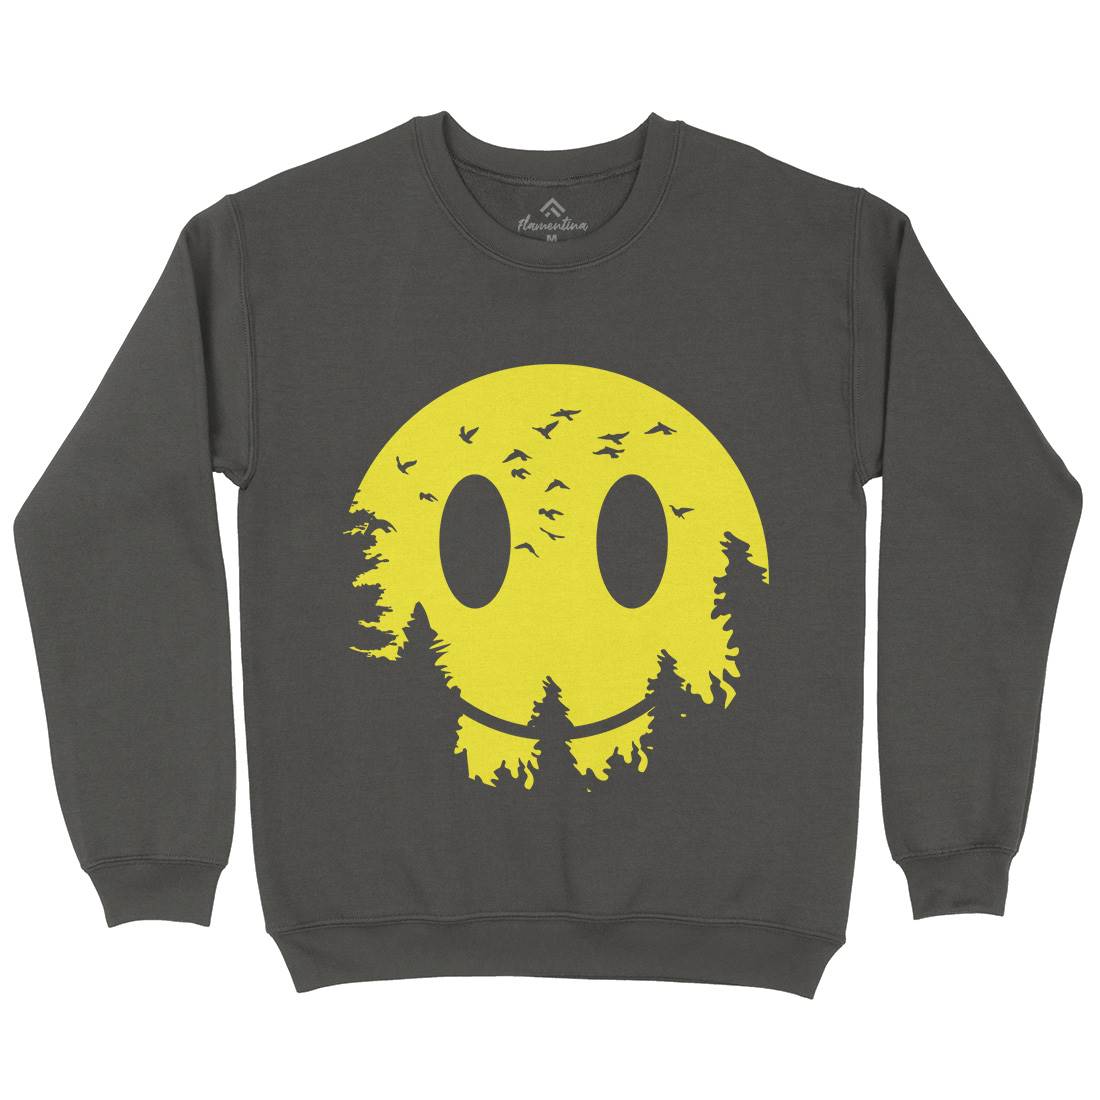 Smile Moon Kids Crew Neck Sweatshirt Retro B081